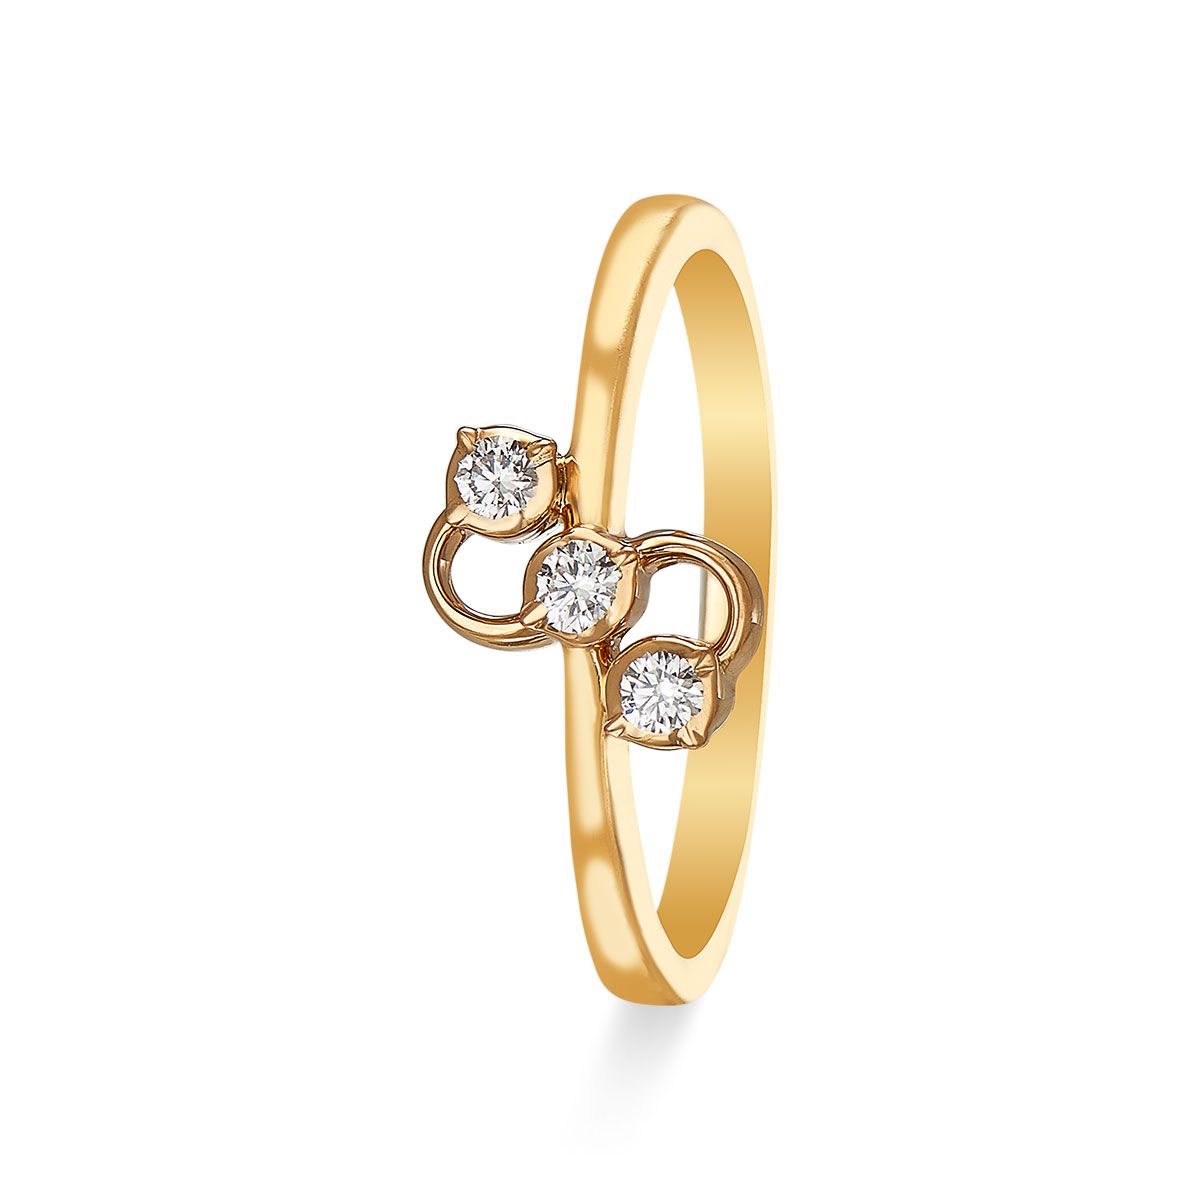 Stylish Elegant Diamond Ring for Men